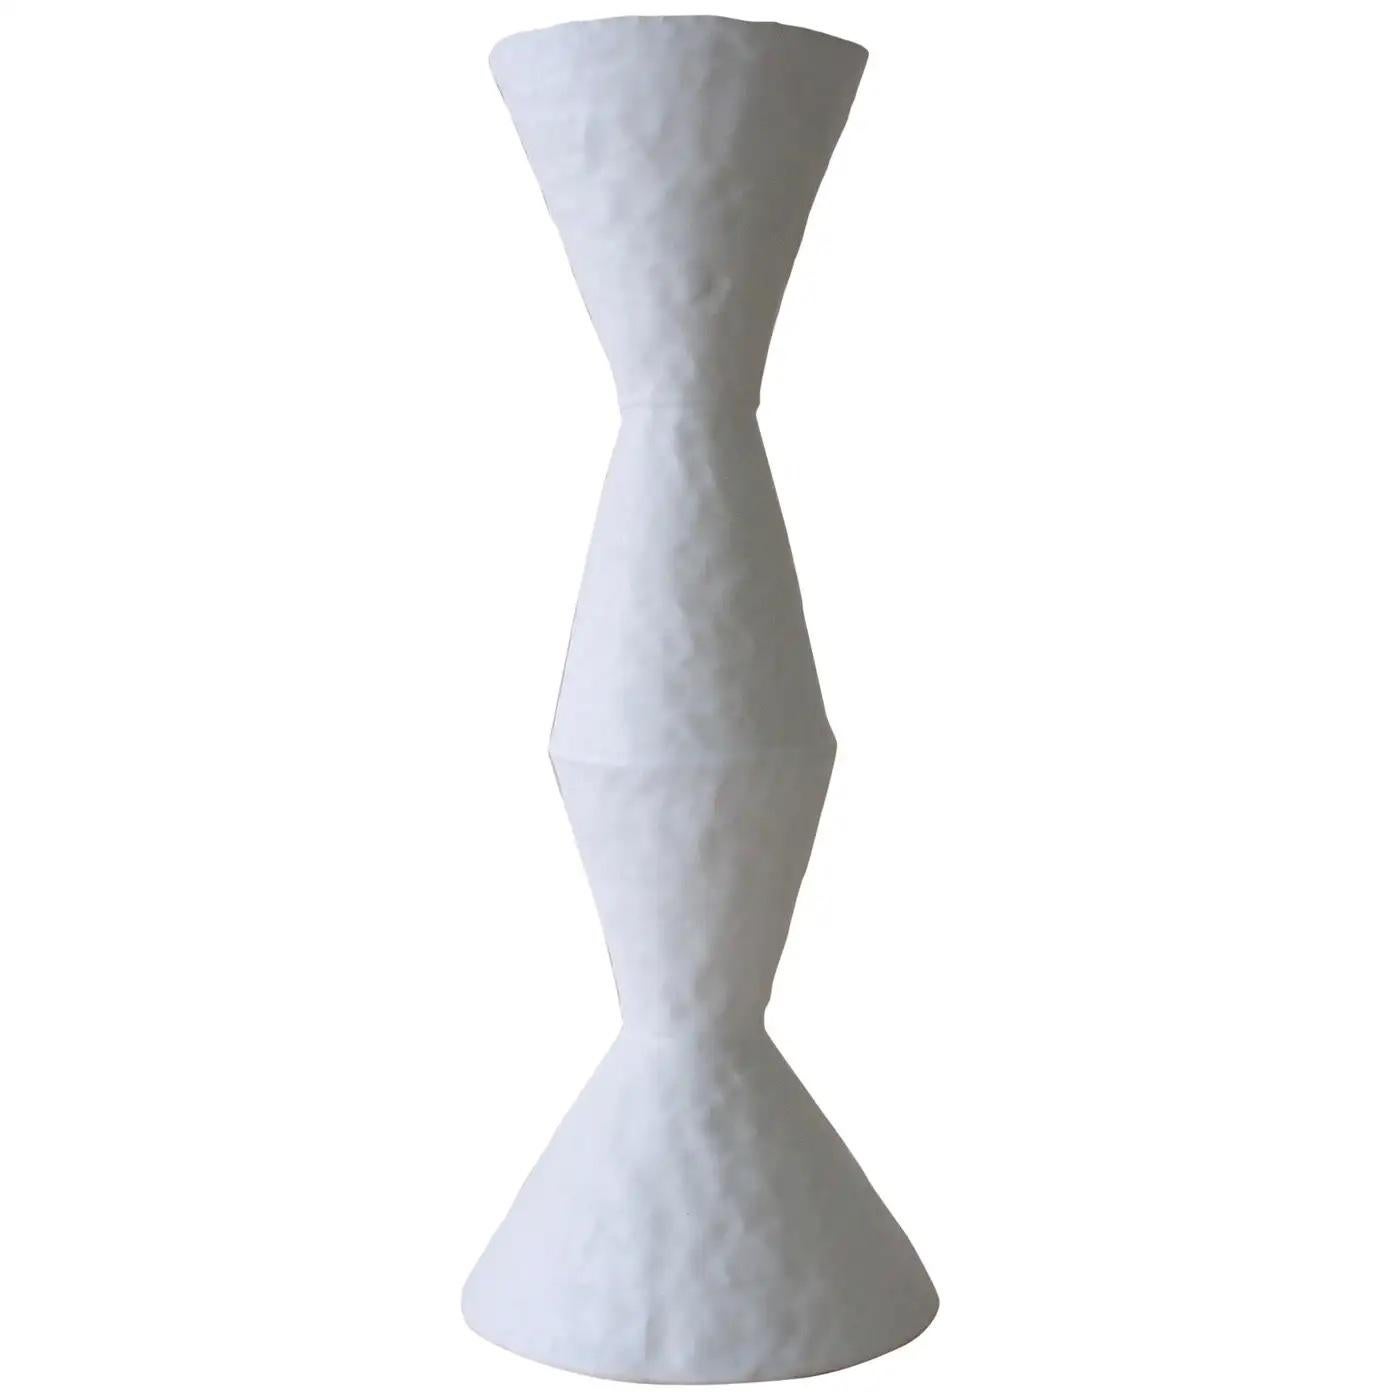 Le vase en grès blanc émaillé de l'artiste céramique américaine contemporaine Giselle Hicks fait partie de sa série Vessel. Chaque A est construite à la main en utilisant une technique de bobinage et de pincement. Il s'agit d'explorations formelles